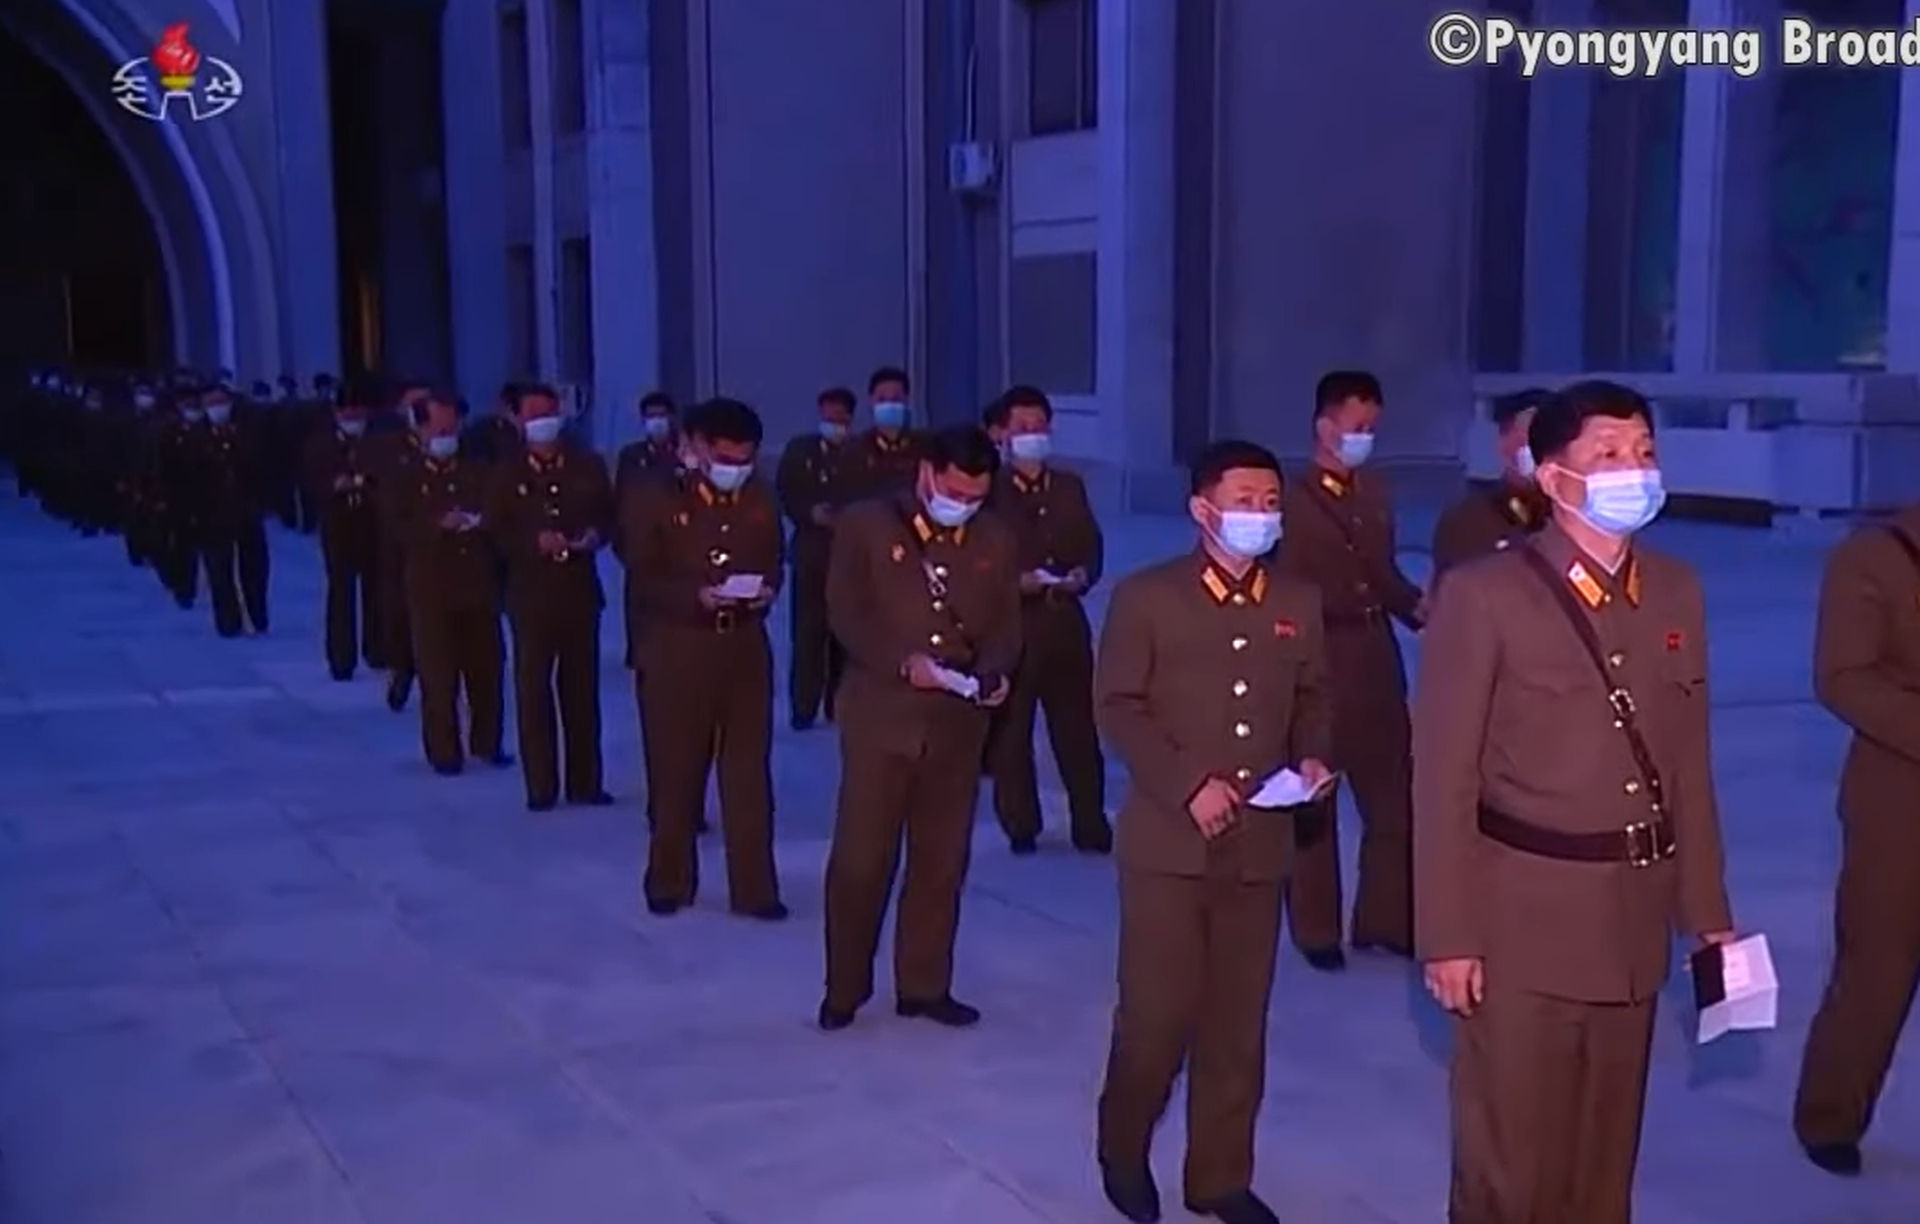 演出开始前，朝鲜人民军等人员进入会场。（朝鲜中央电视台视频截图）